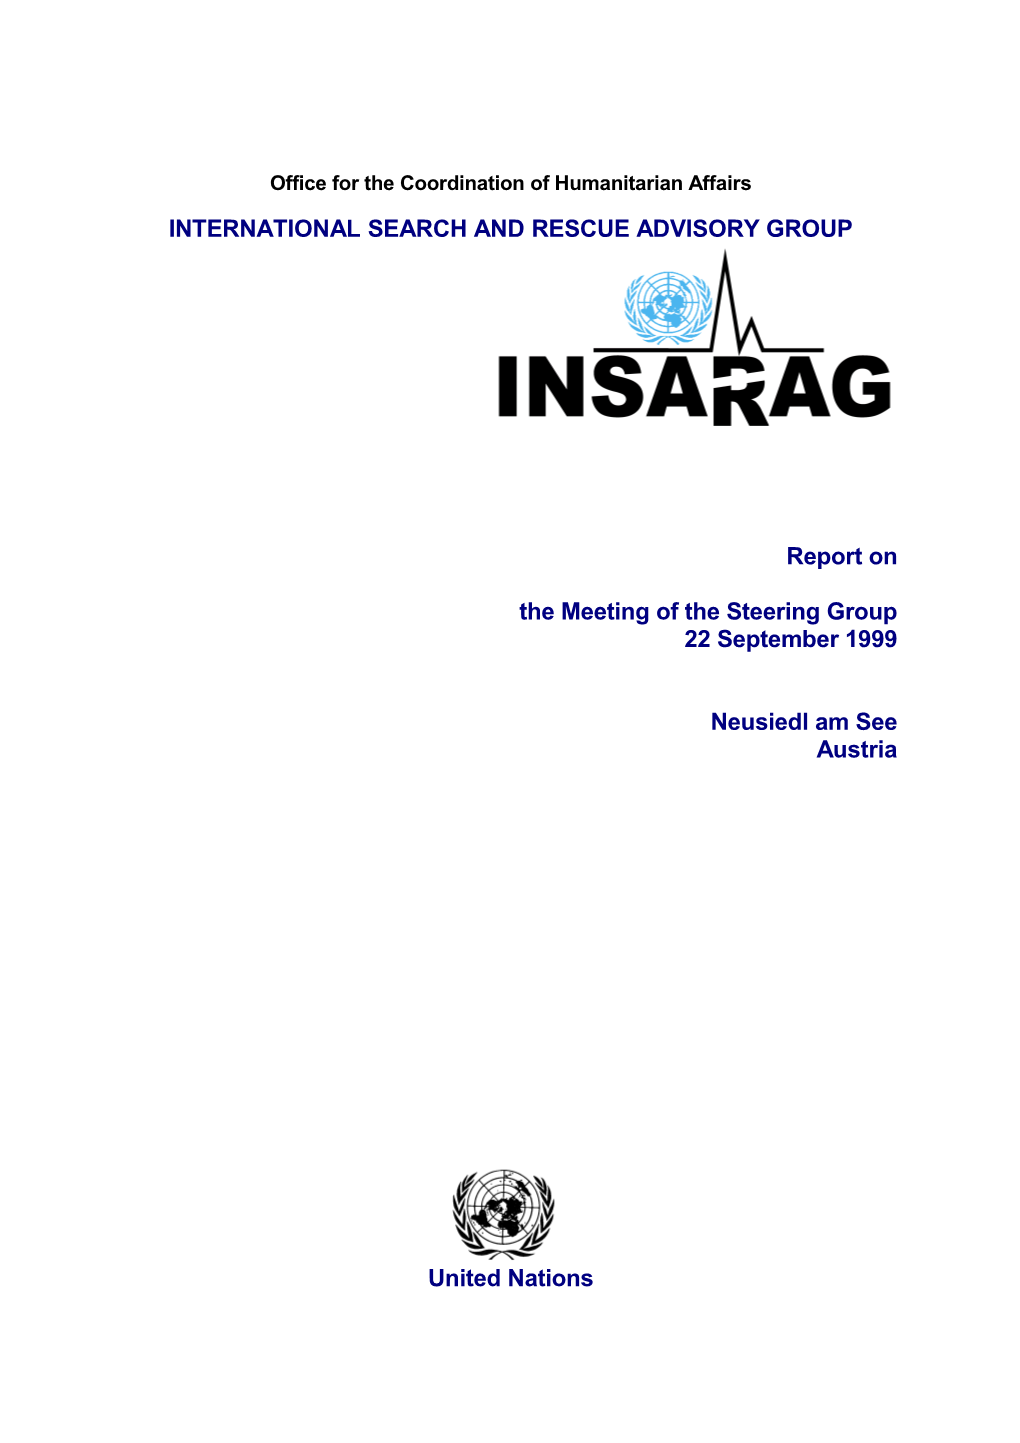 Meeting of the INSARAG Steering Committee